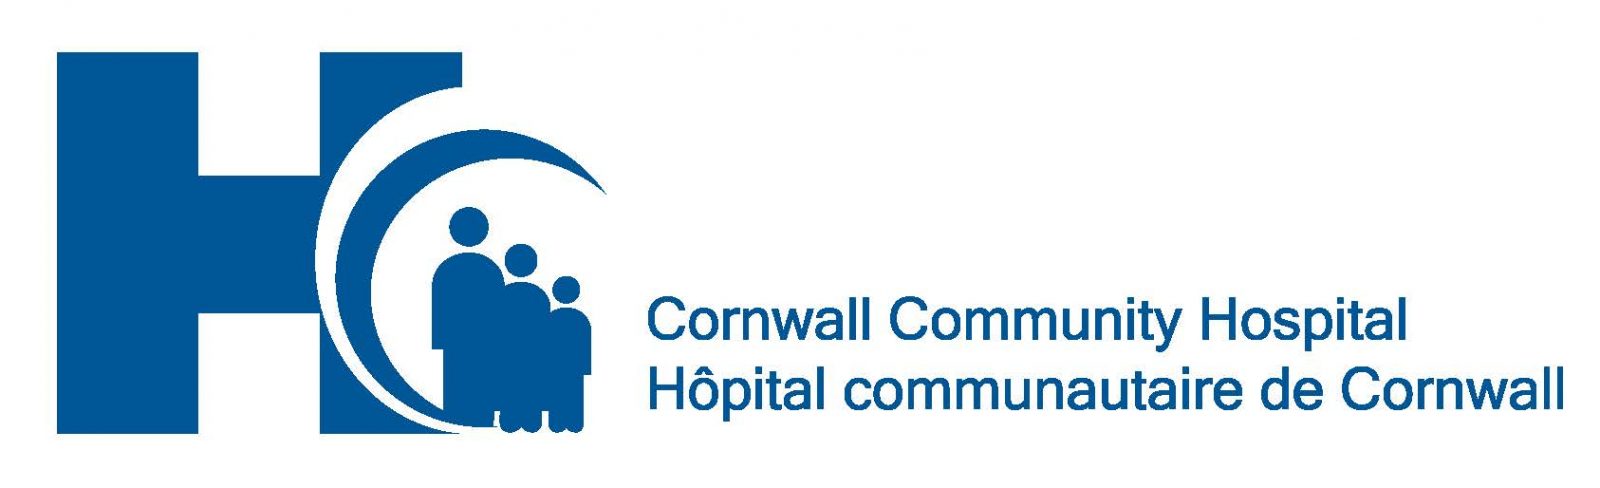 L’Hôpital communautaire de Cornwall sollicite des commentaires au sujet de son plan stratégique